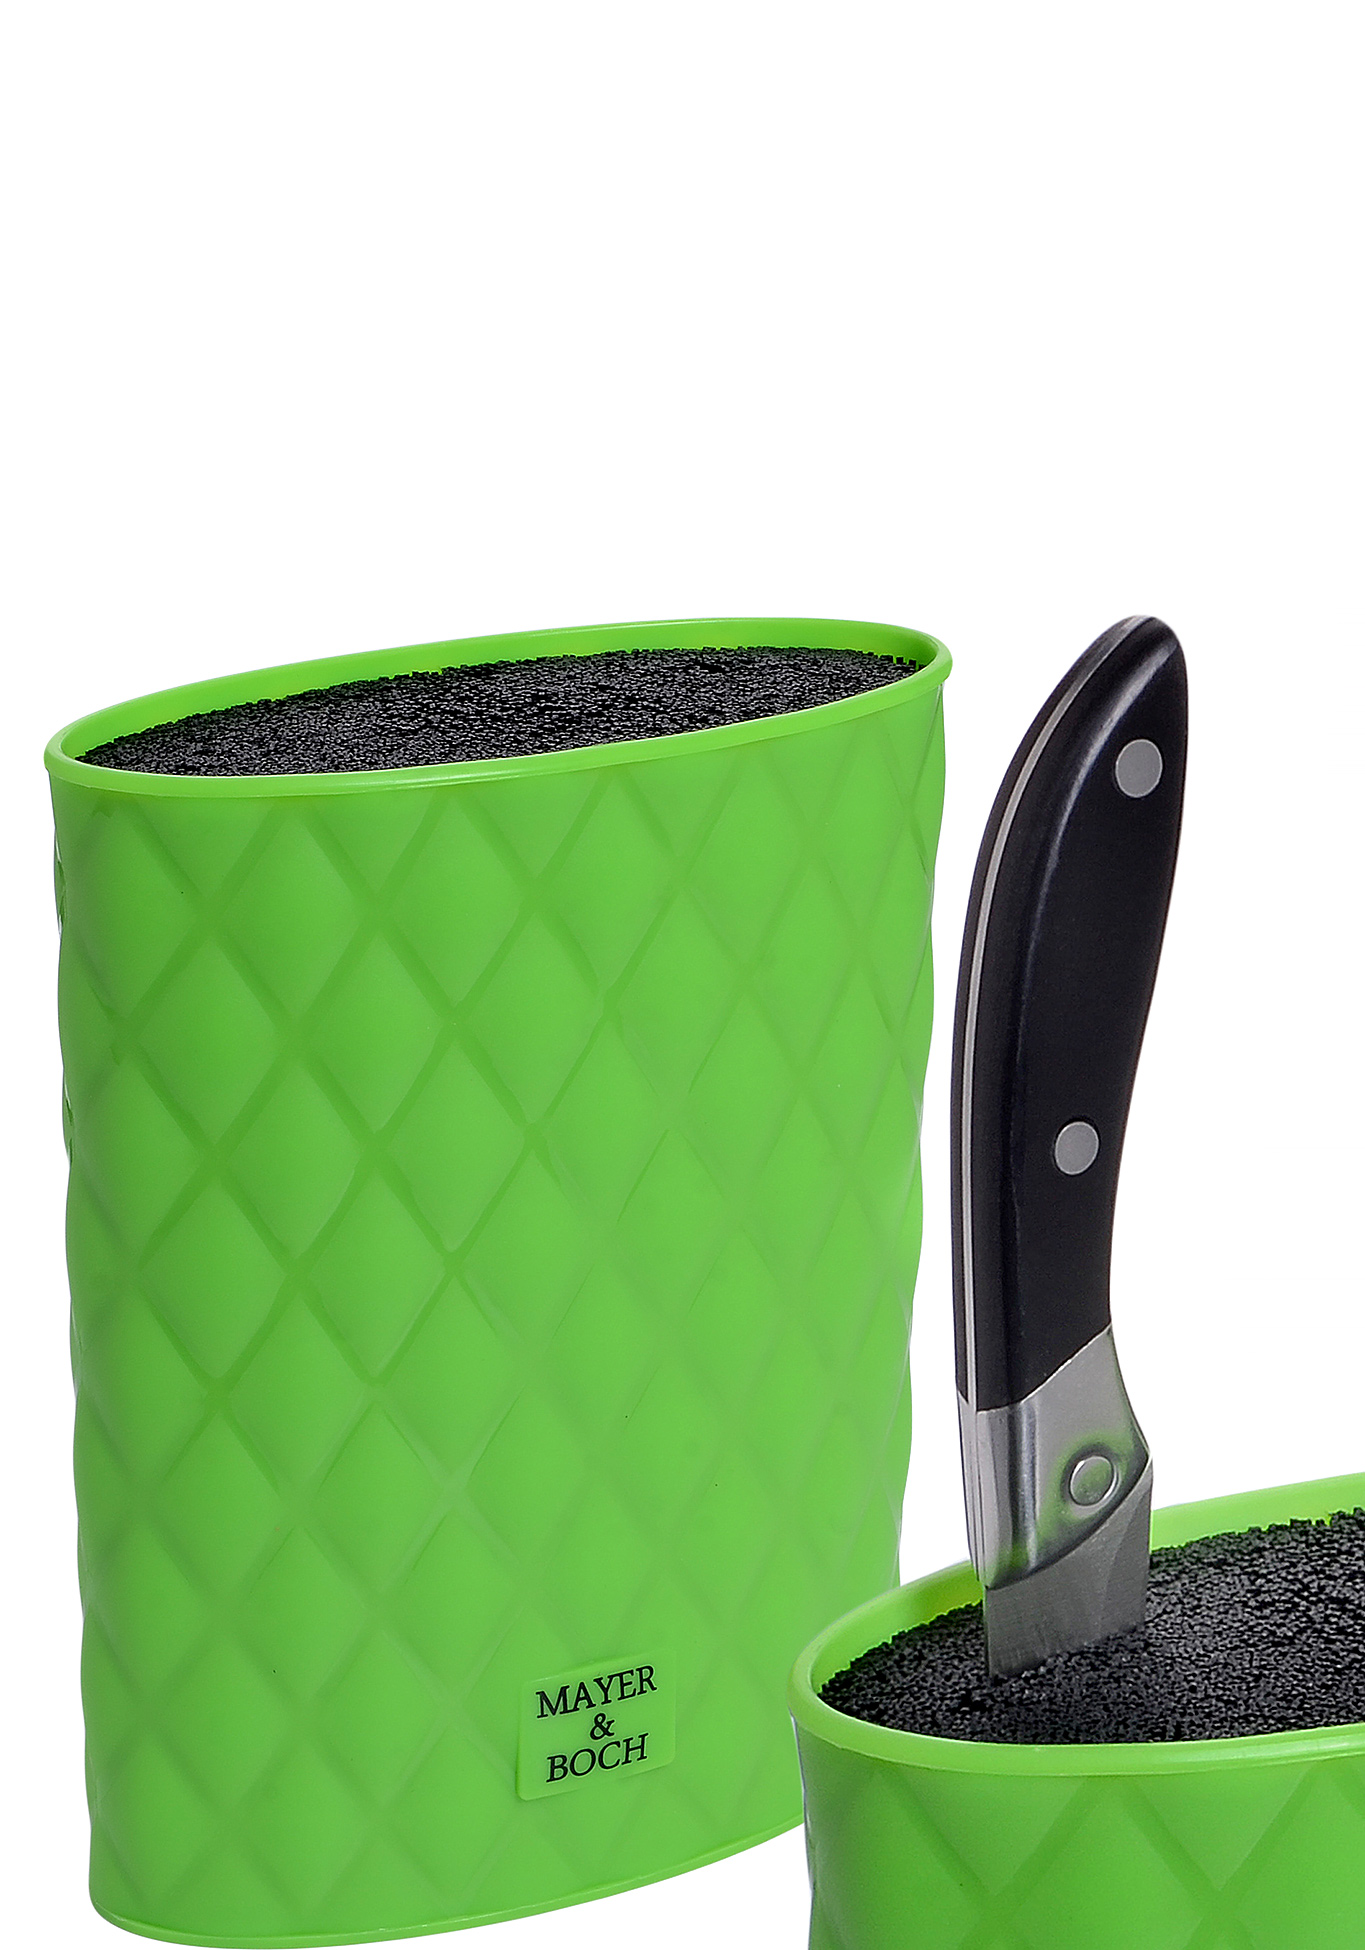 Универсальная подставка для ножей Mayer&Boch, цвет зеленый, размер 22 см - фото 3